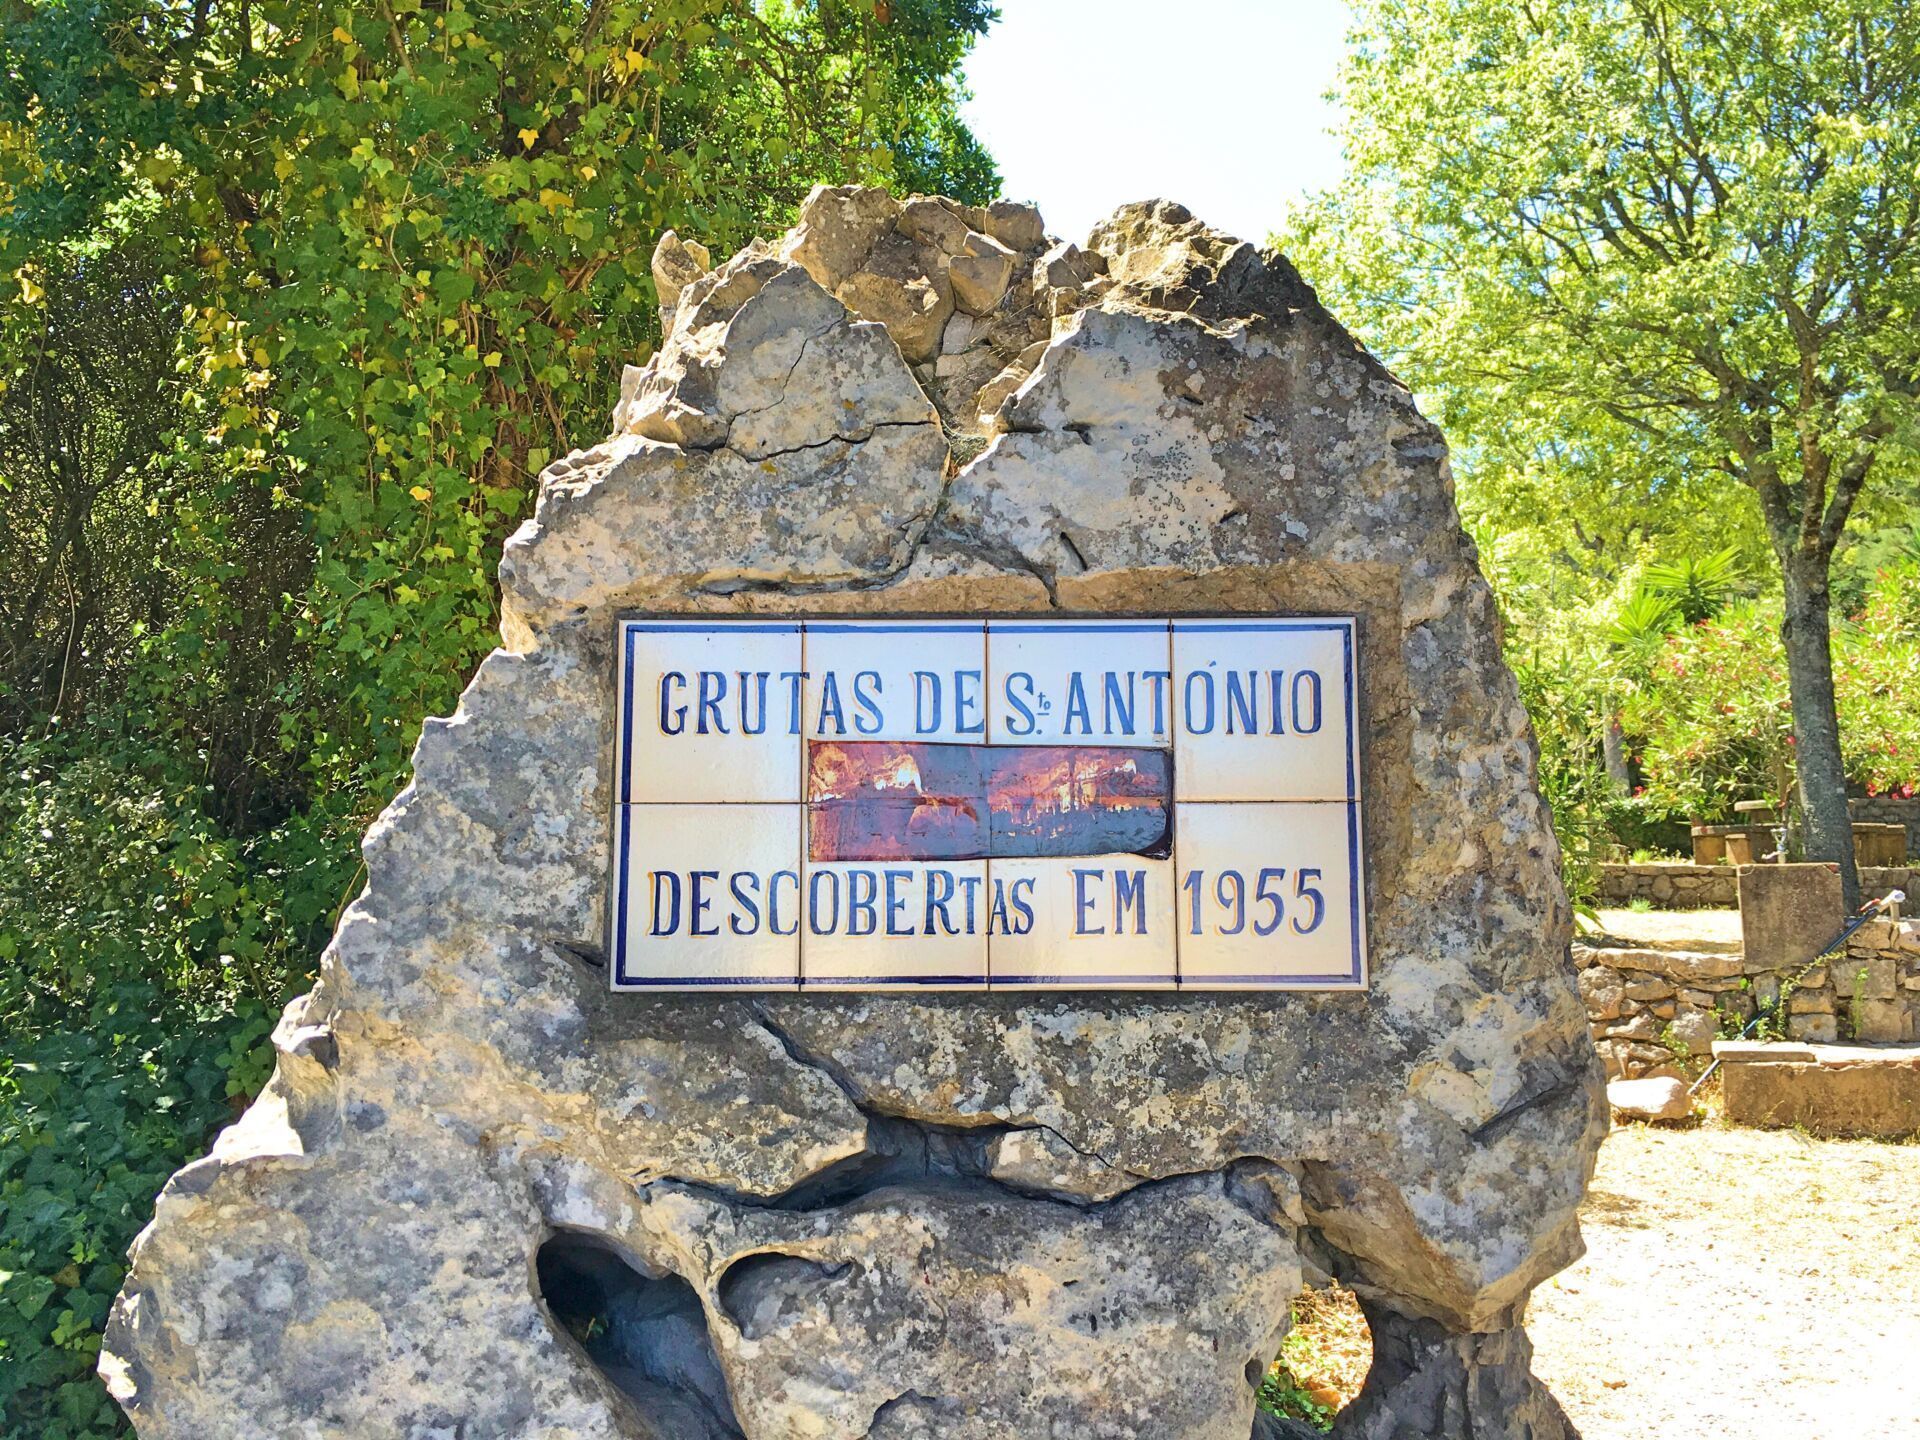 Grutas de Santo António sign